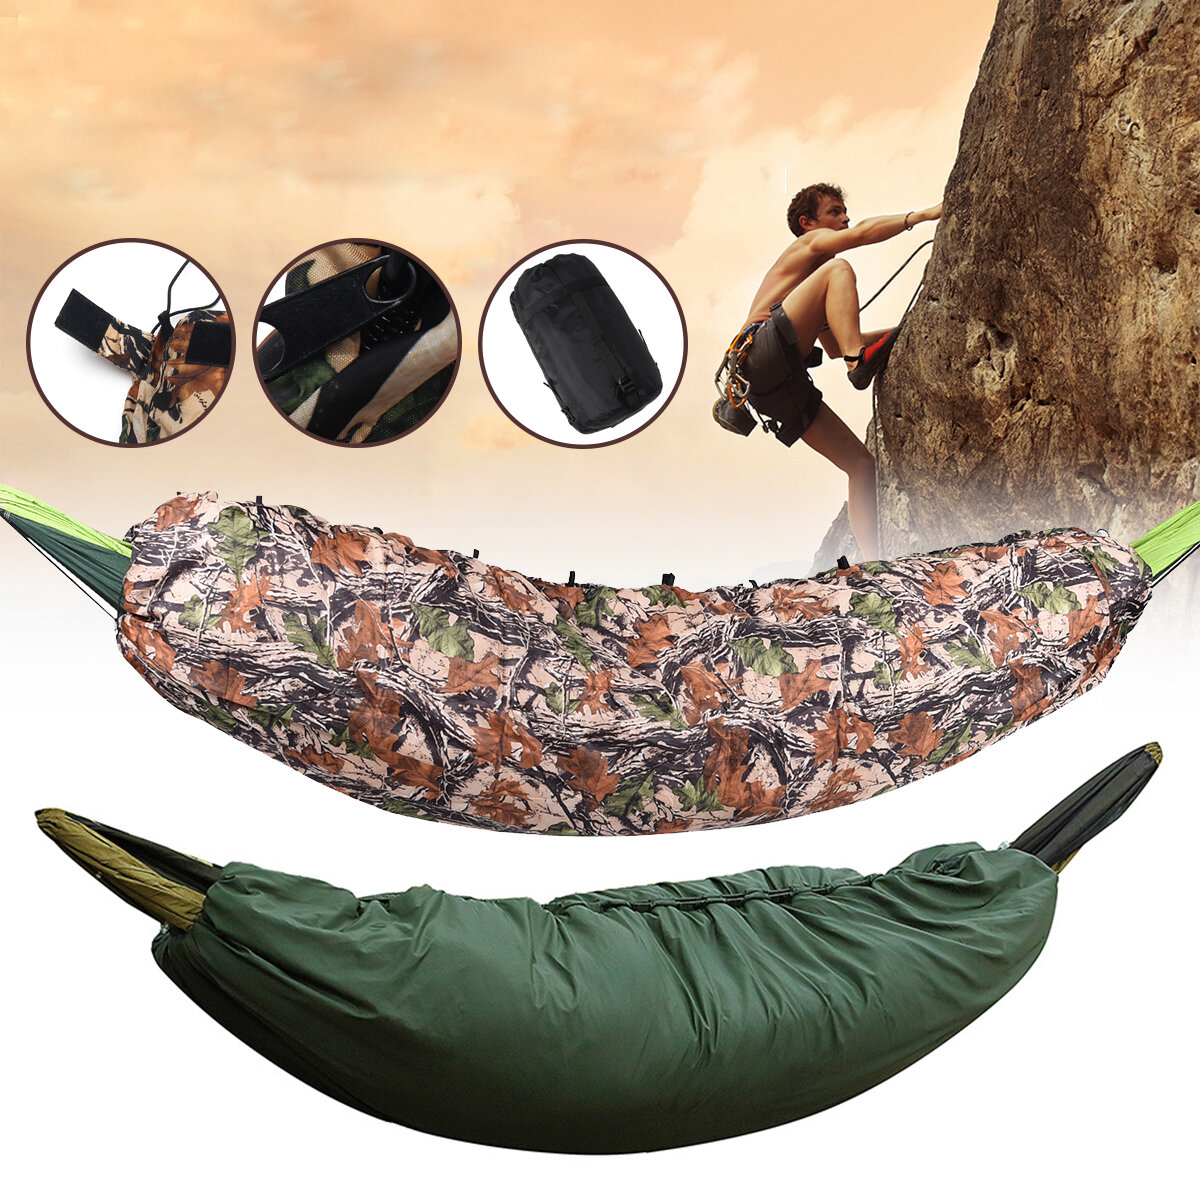 Sac de couchage pour le camping avec isolation thermique, hamac et sous-matelas ultraléger pour les voyages et l'escalade.